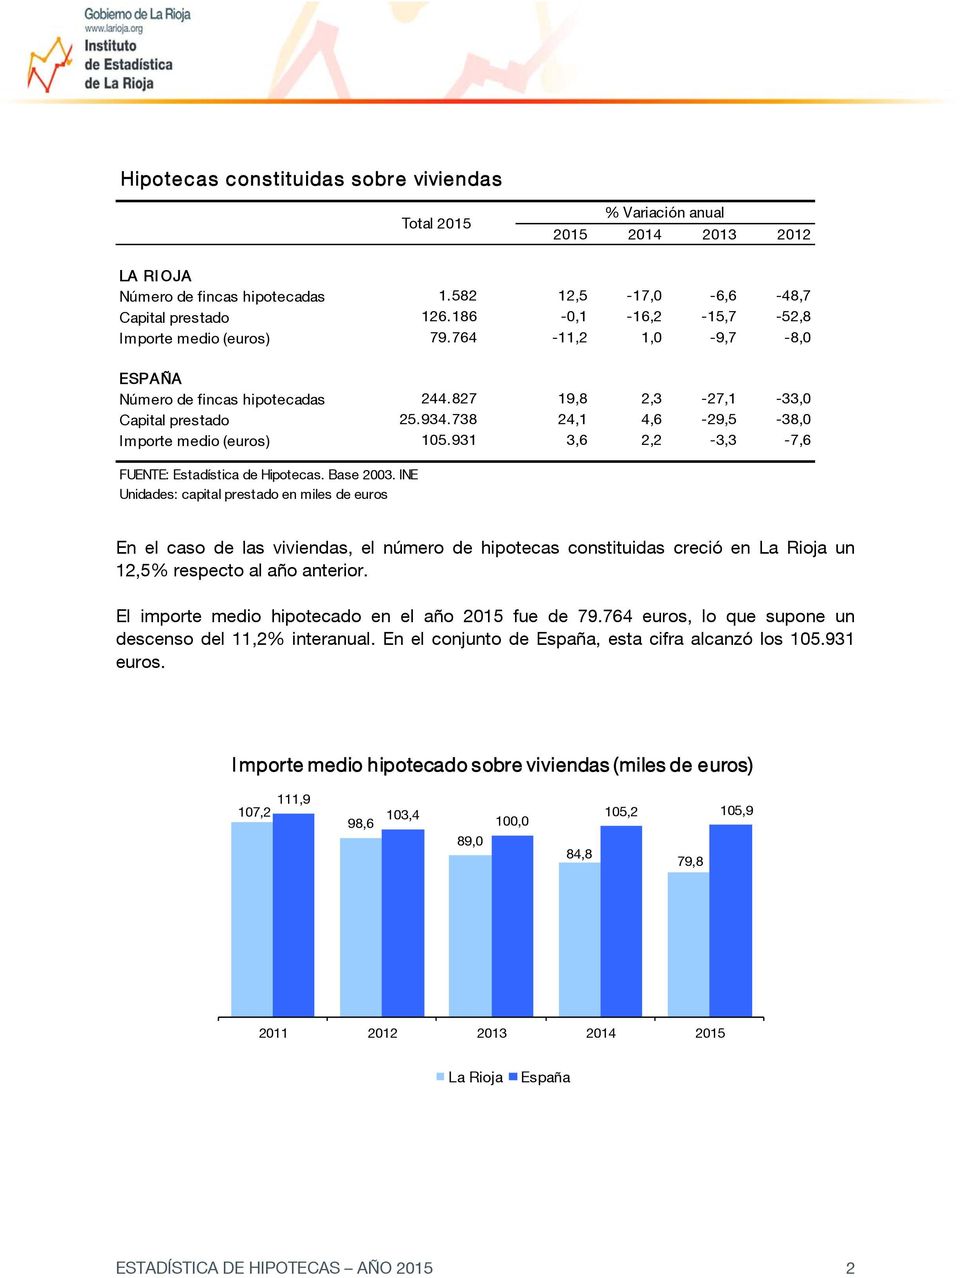 931 3,6 2,2-3,3-7,6 Unidades: capital prestado en miles de euros En el caso de las viviendas, el número de hipotecas constituidas creció en La Rioja un 12,5% respecto al año anterior.